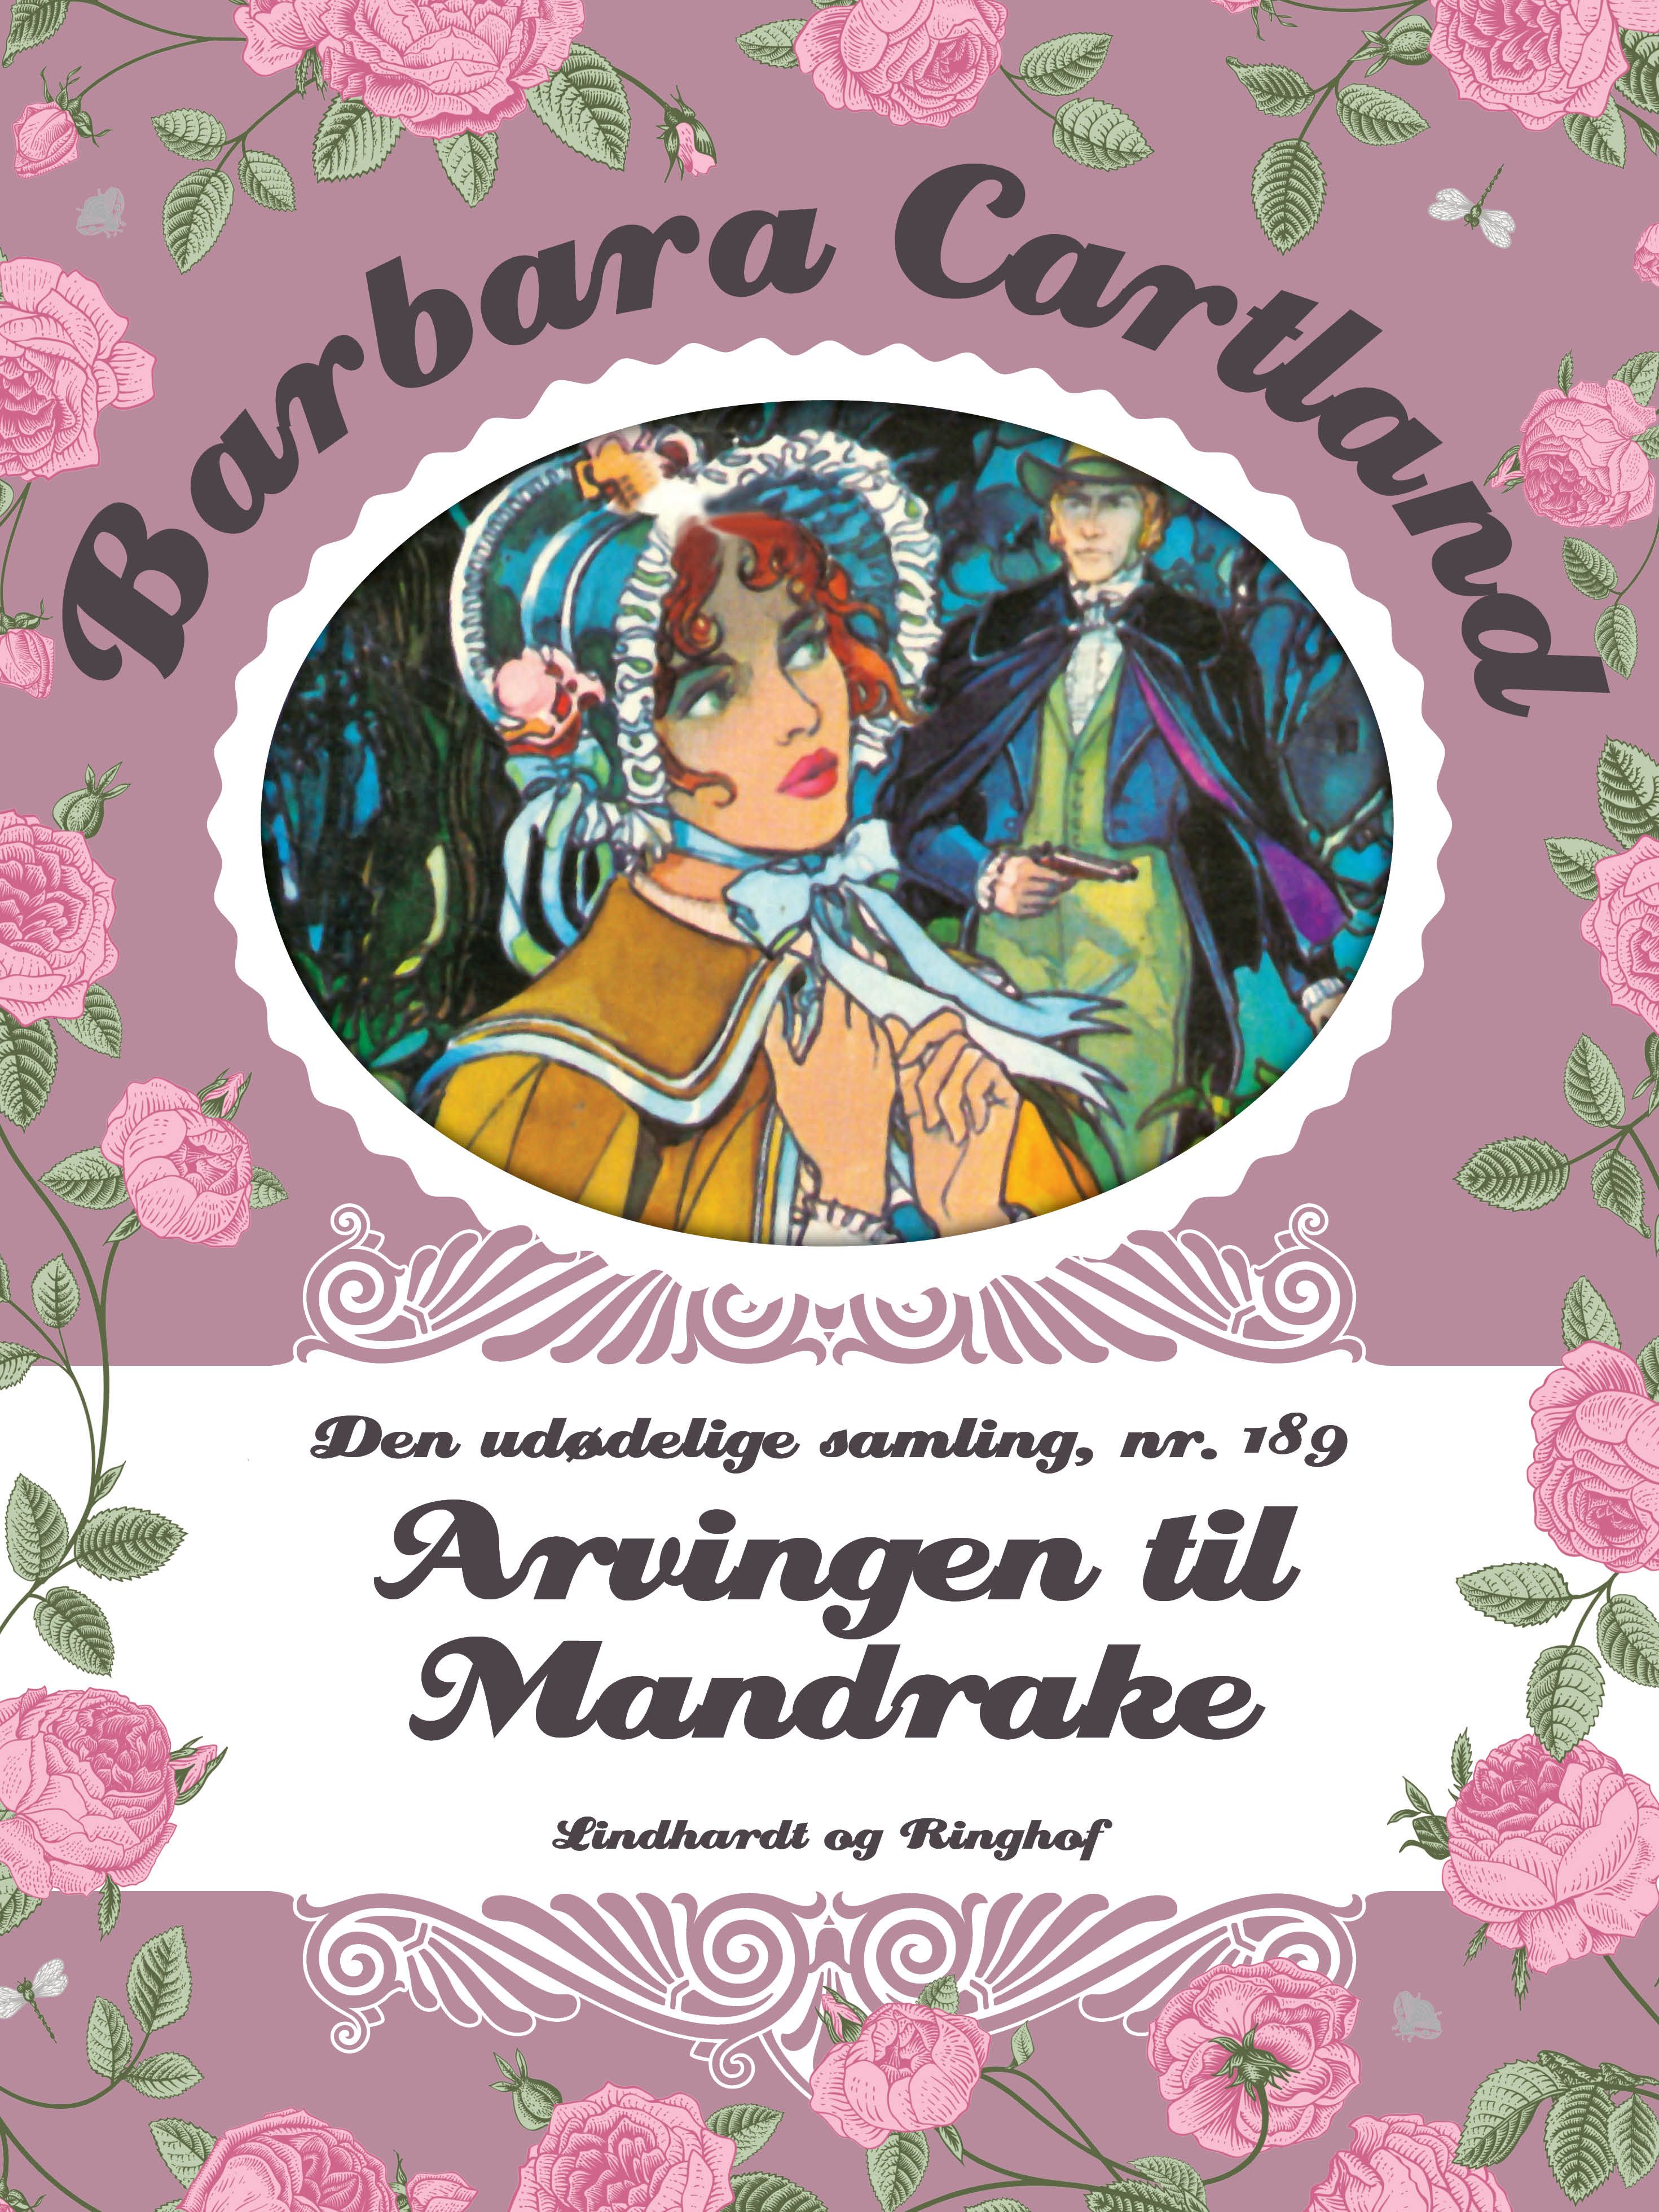 Arvingen til Mandrake, e-bok av Barbara Cartland